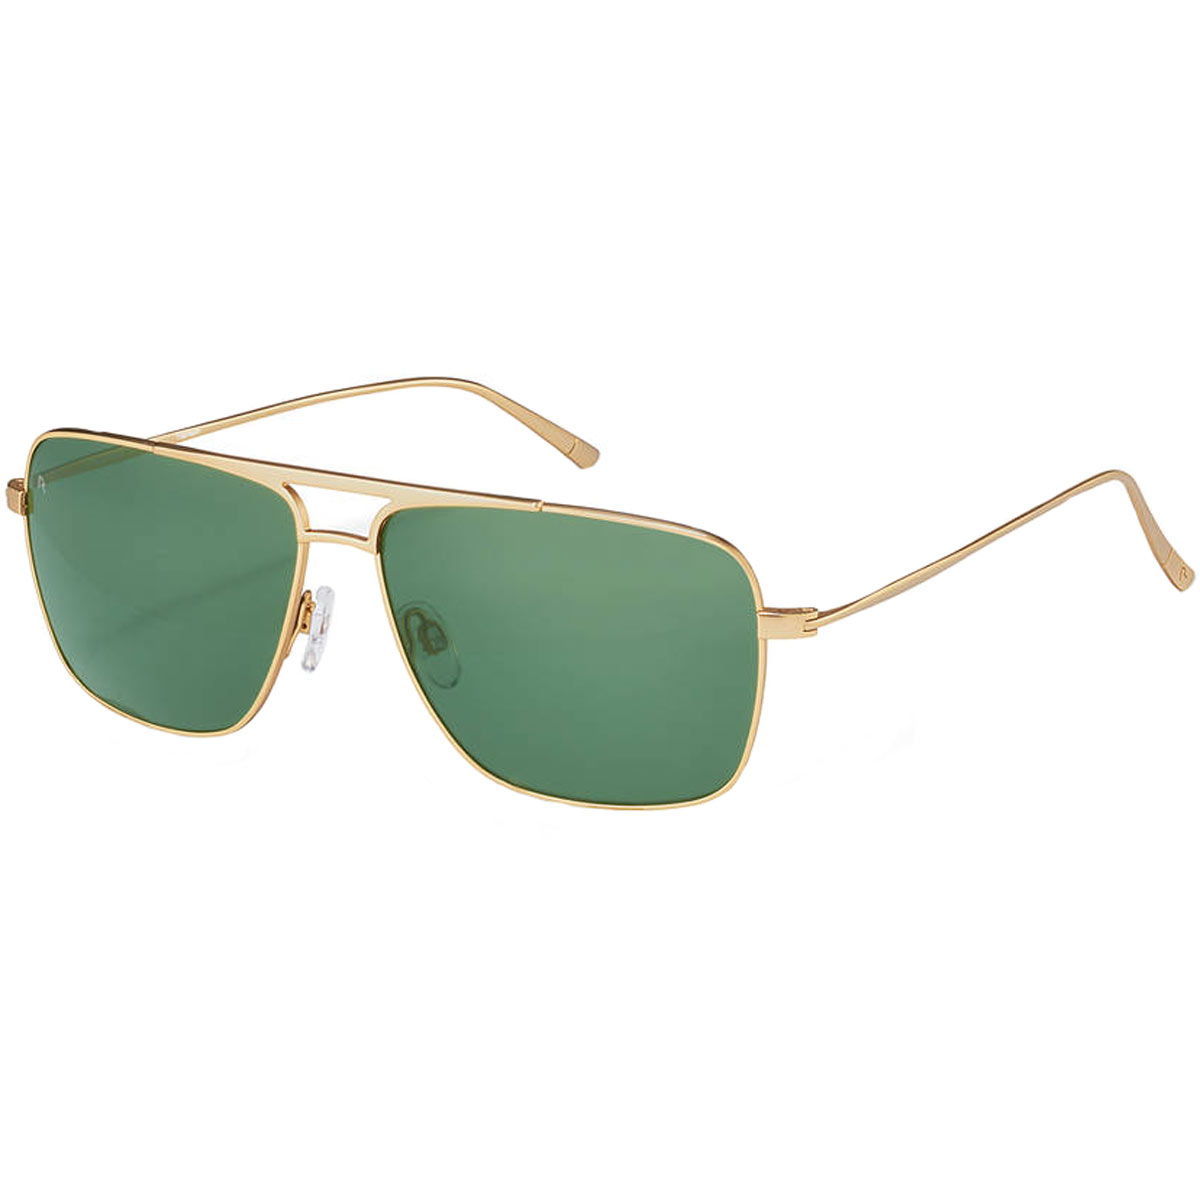 Rodenstock R7414 C Men's Gold Tone Titanium Frame Sunglasses - image 1 of 8